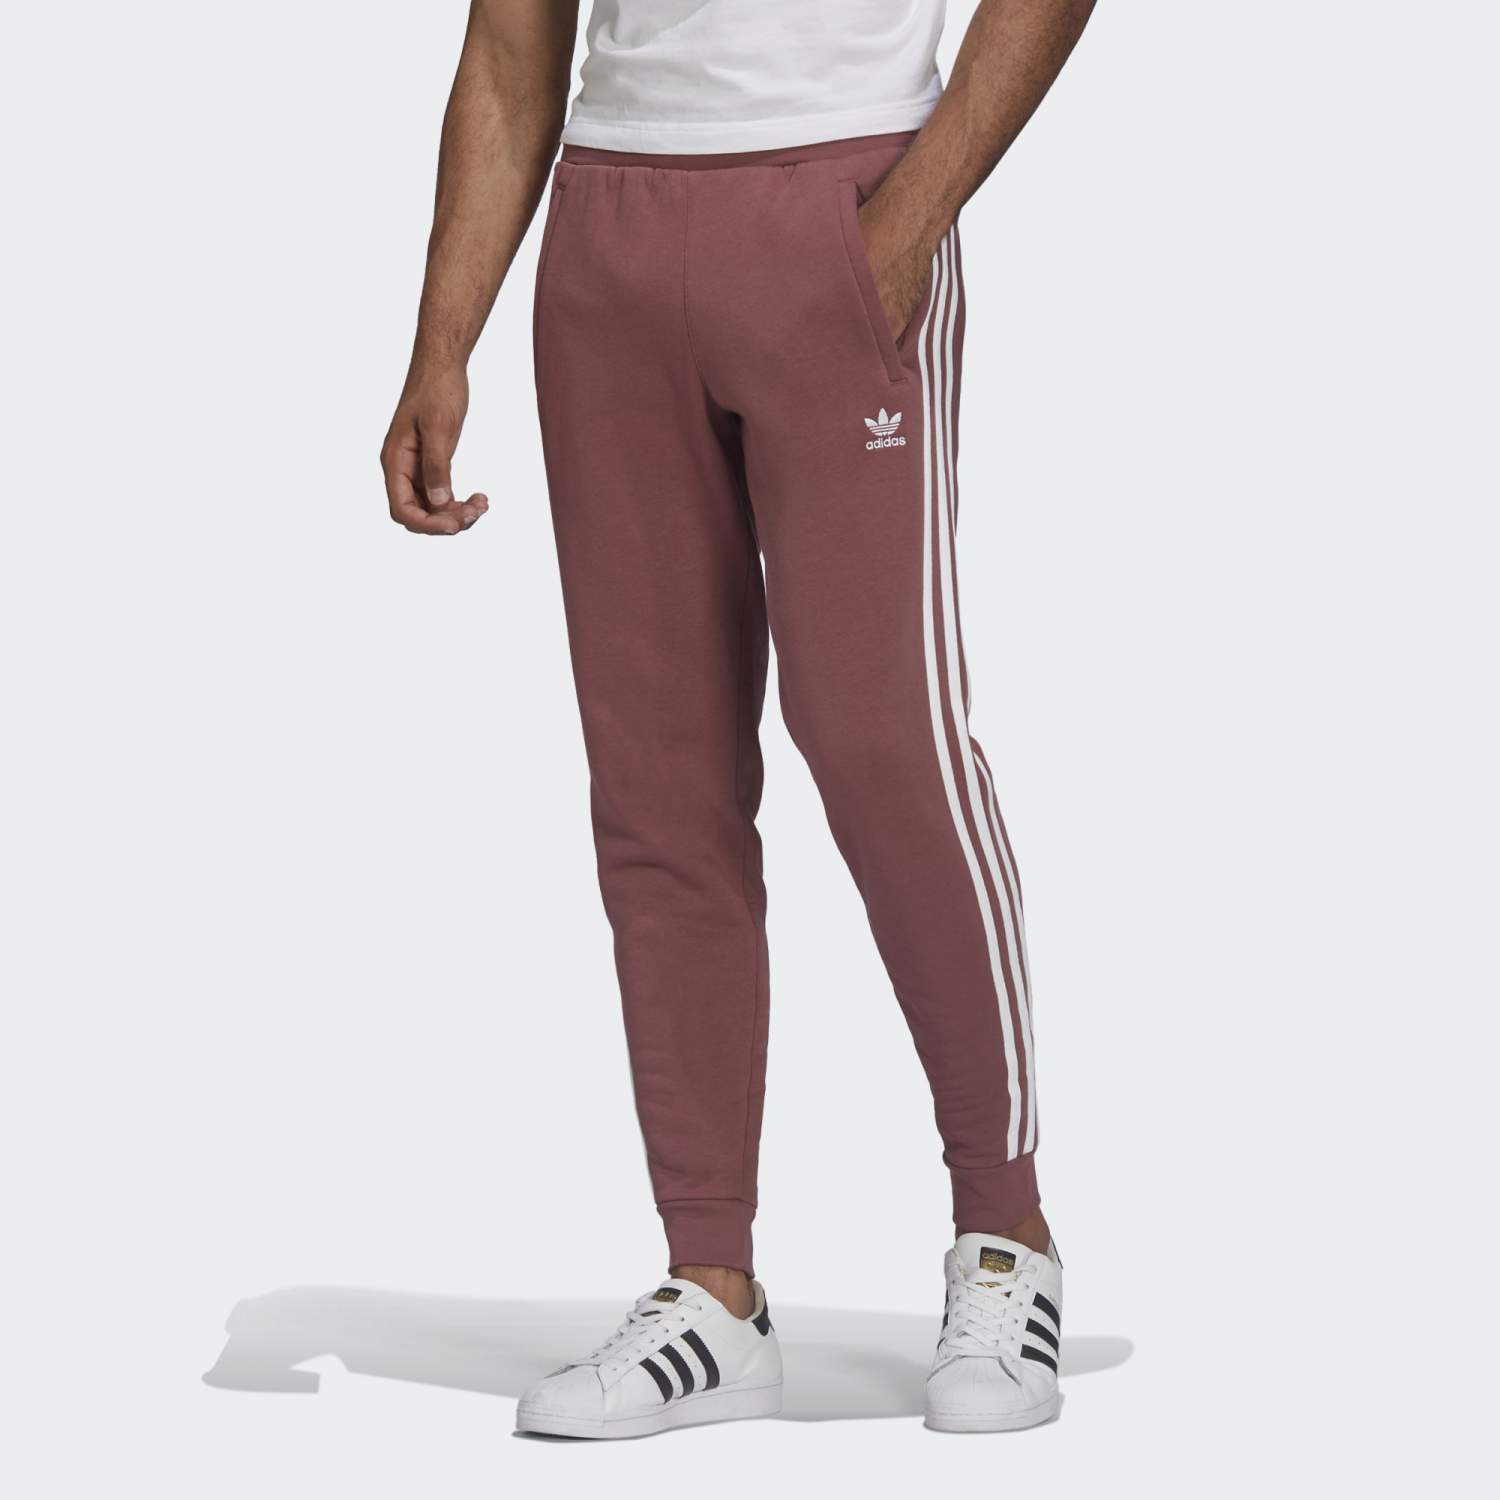 Спортивные брюки мужские Adidas HF2101 красные S - купить в Москве, цены наМегамаркет